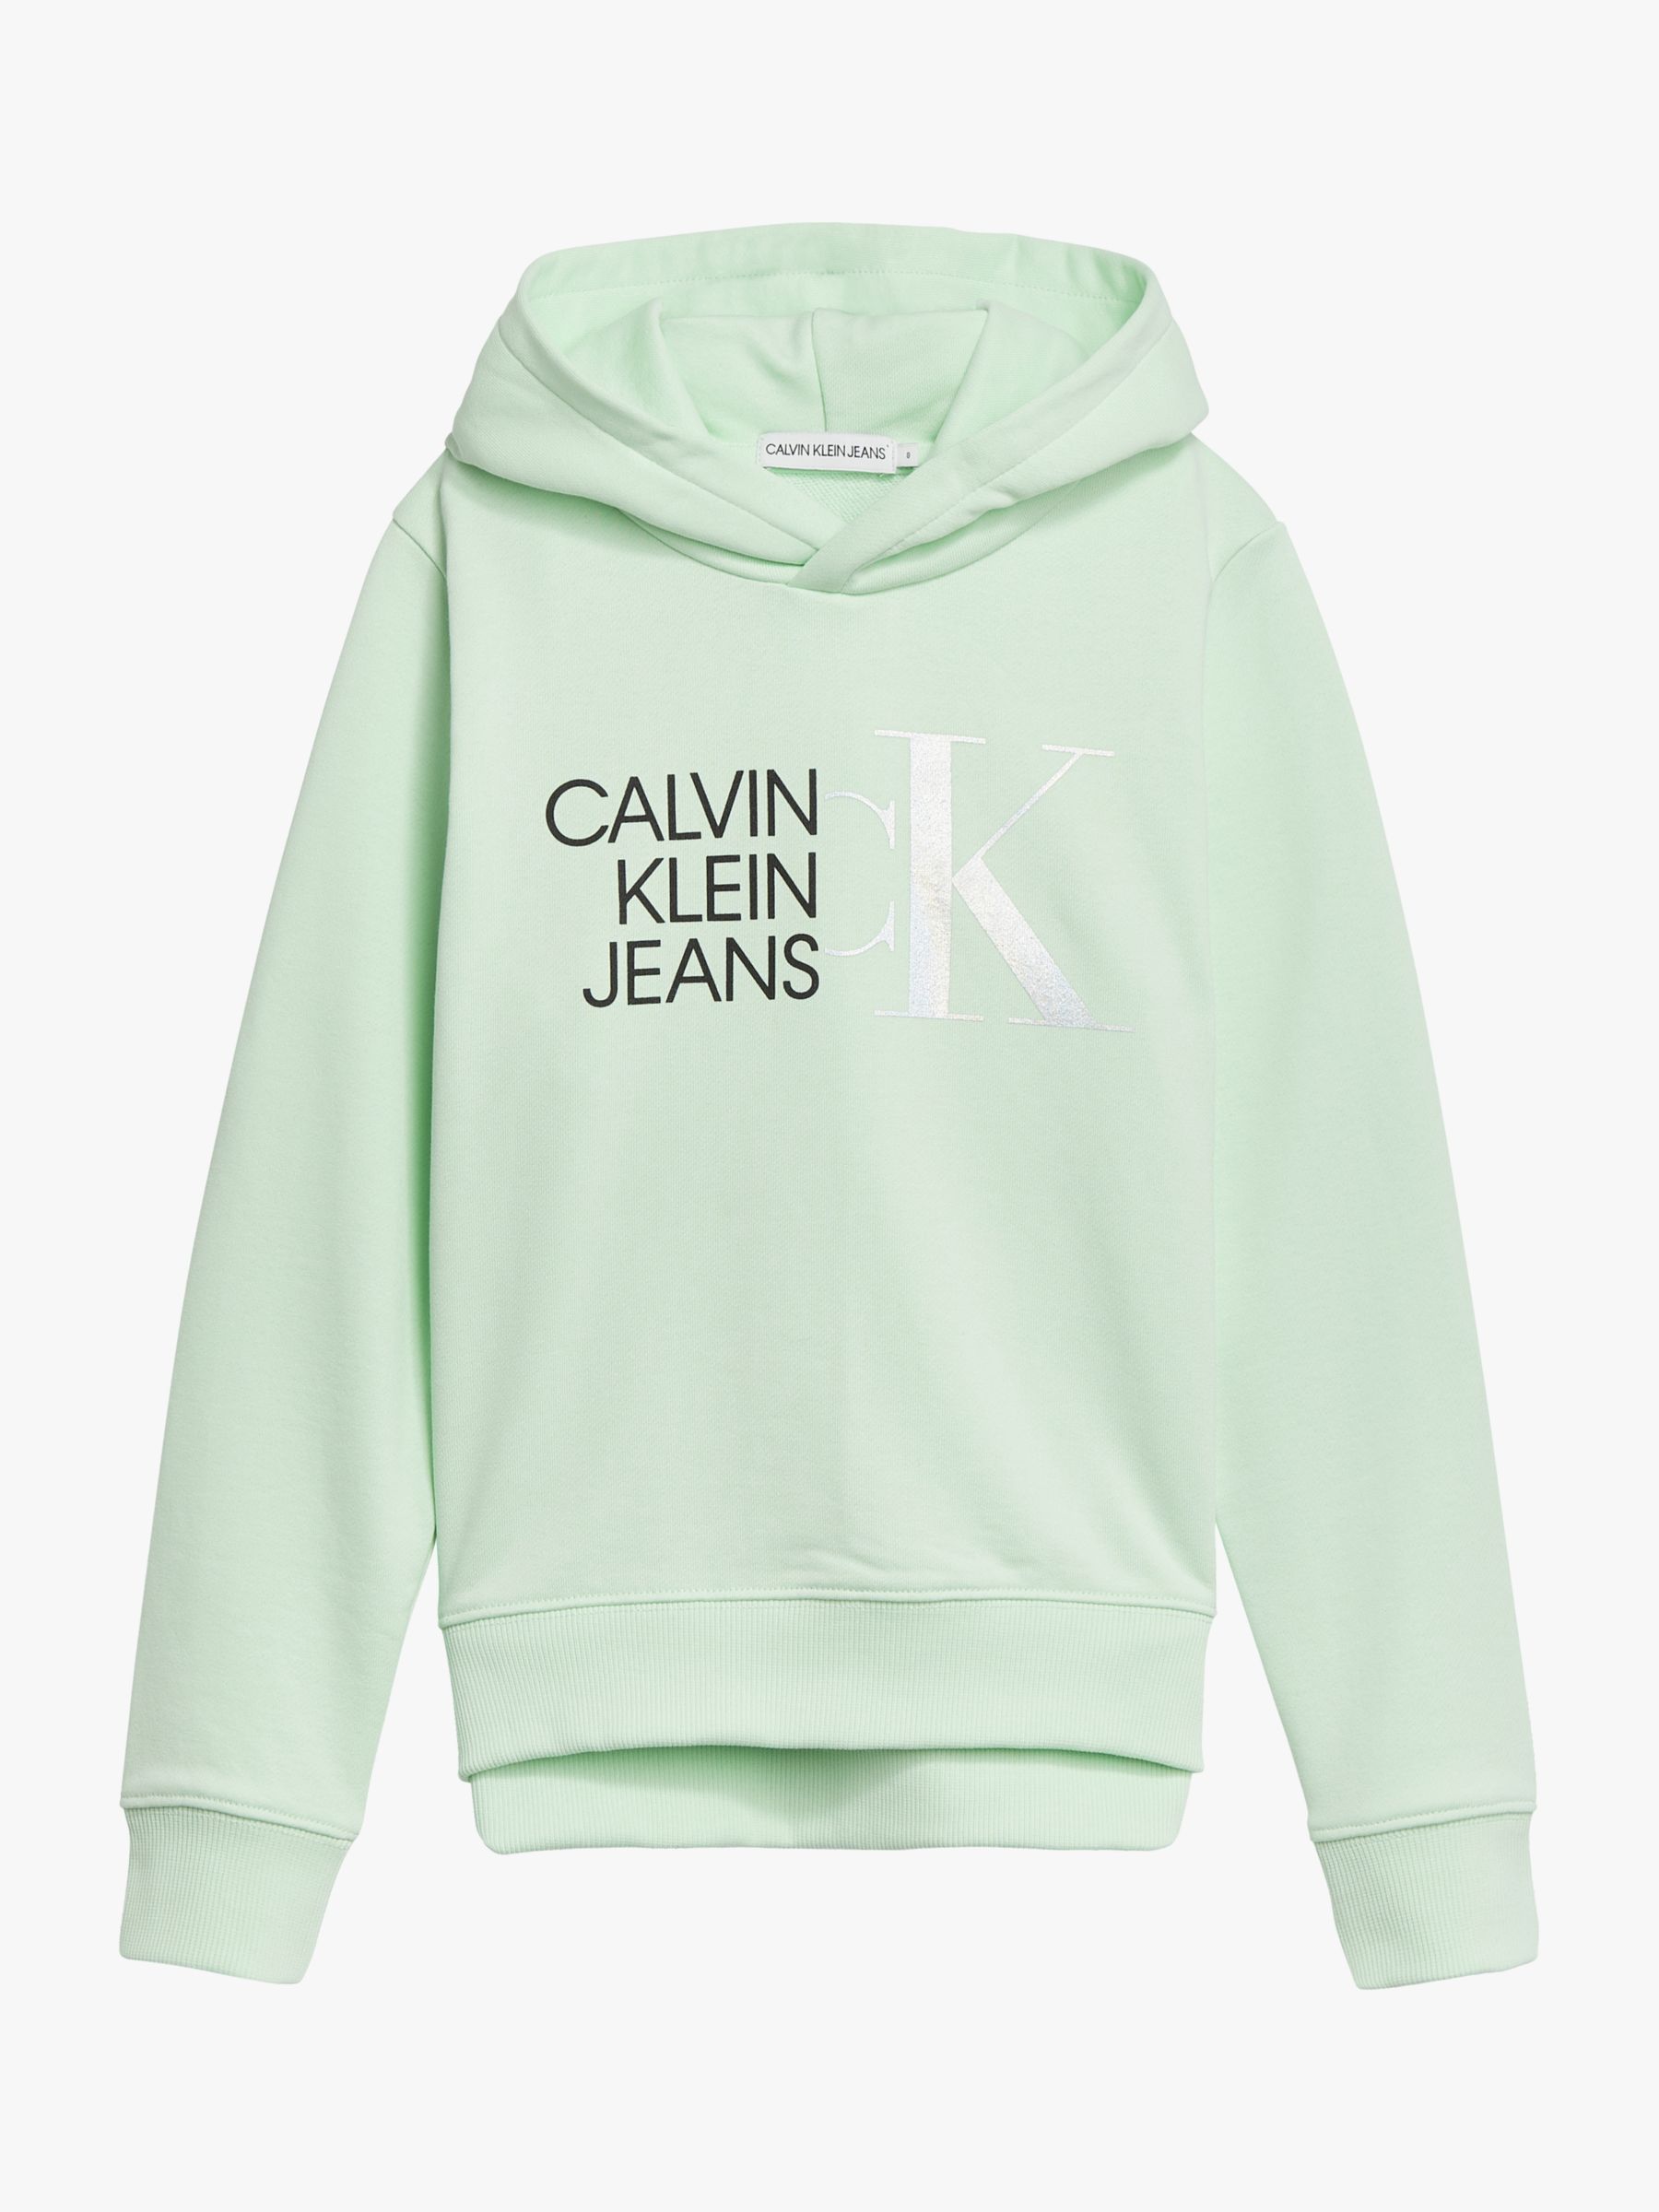 Calvin Klein Kids' Hybrid Logo Hoodie, Dew Green at John Lewis & Partners